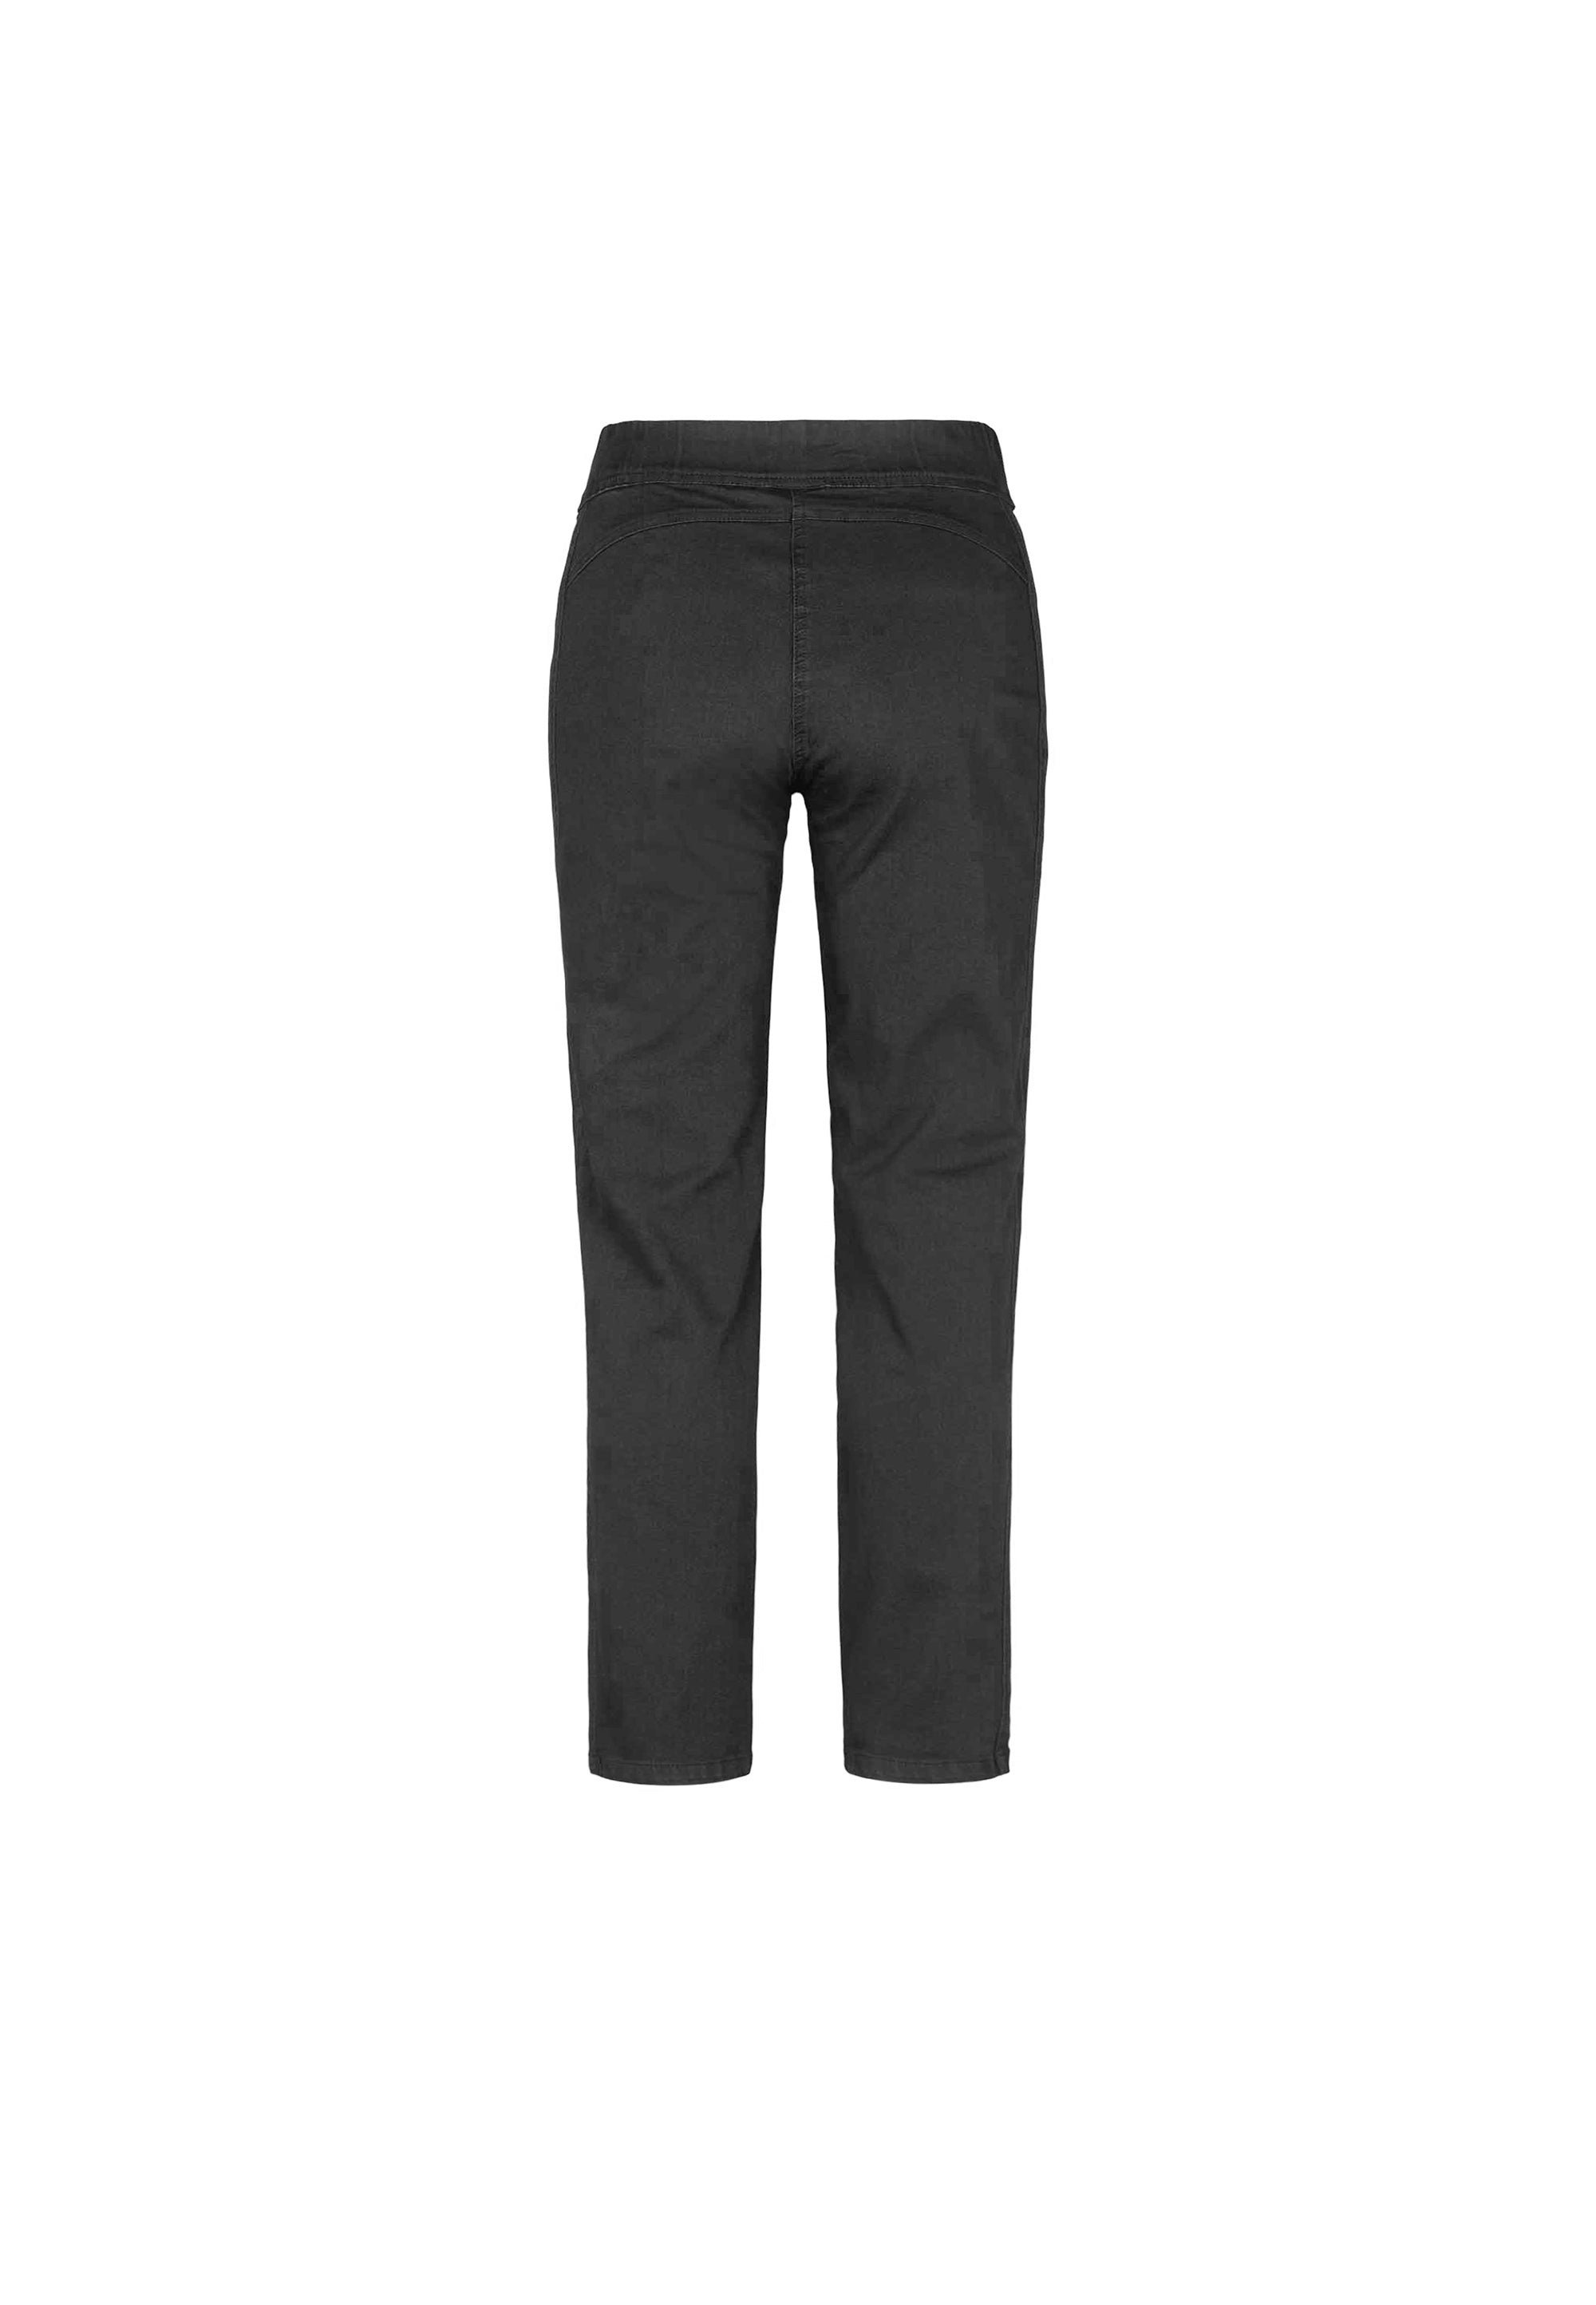 LAURIE Serene Regular - Short Length Trousers REGULAR 99000 Black